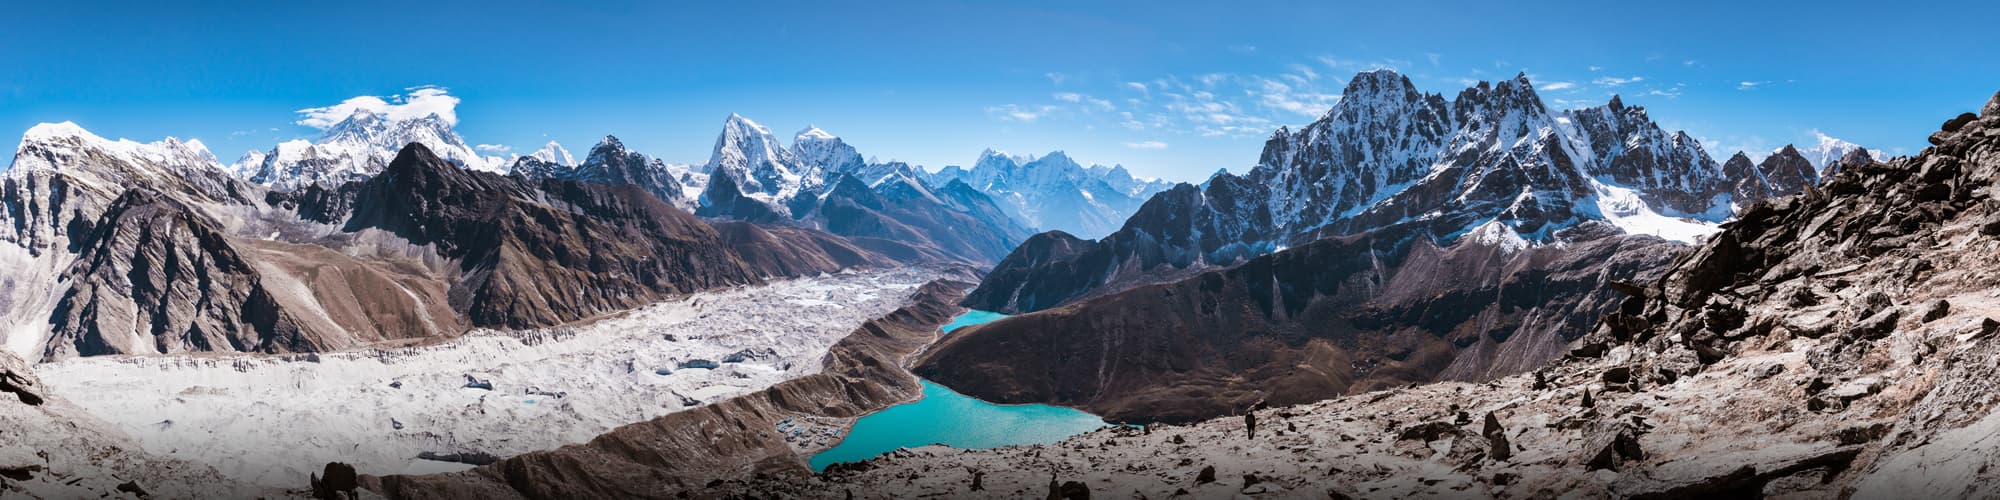 Randonnée Népal © Thrithot / Adobe Stock